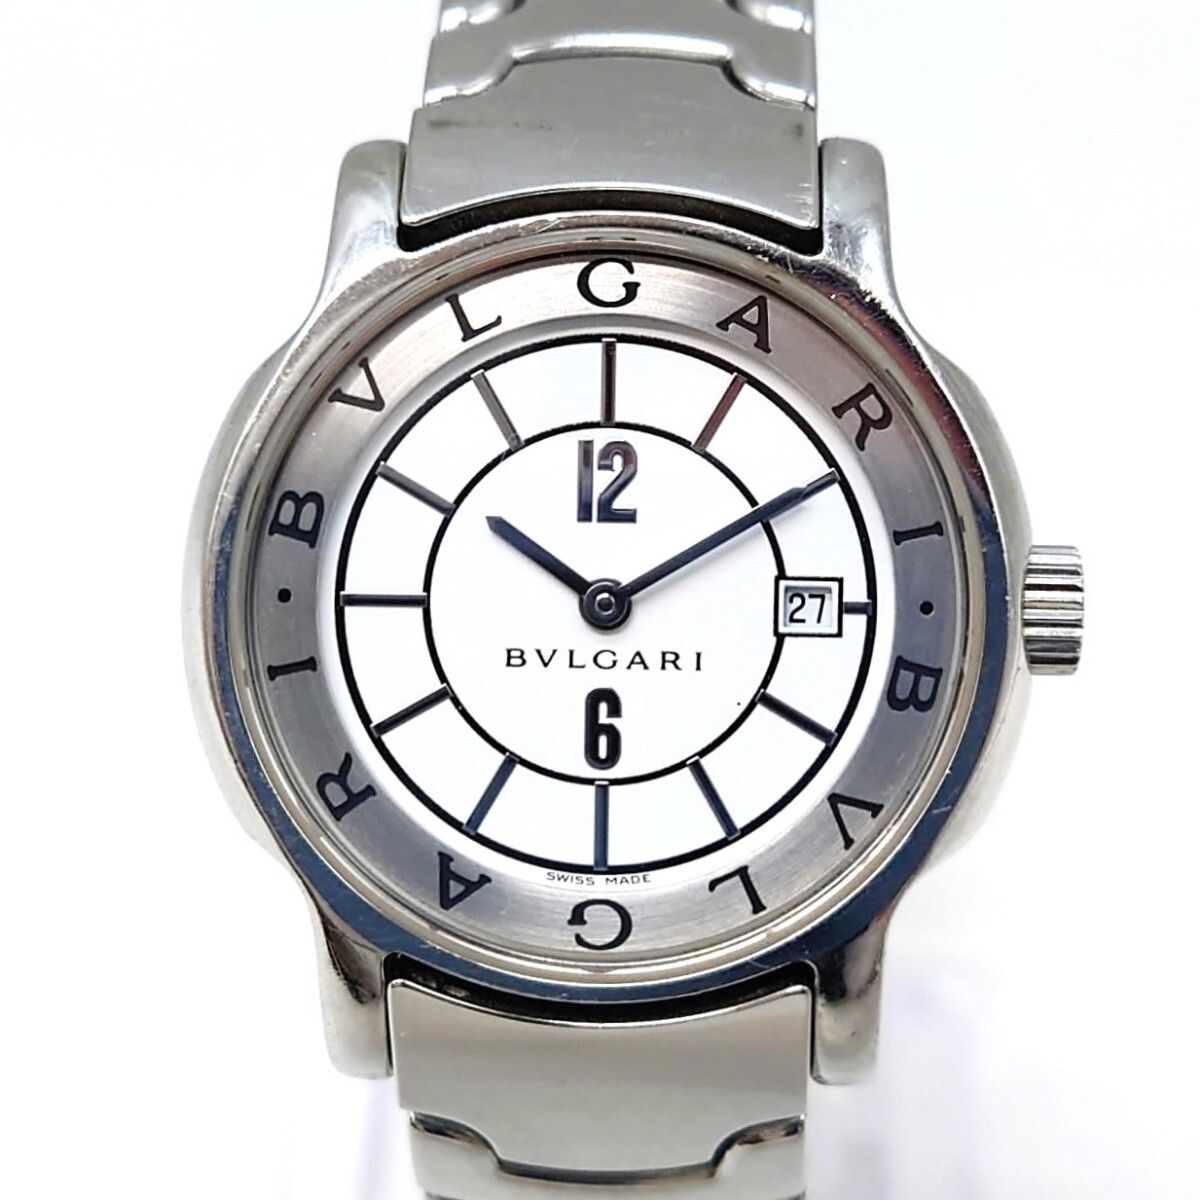 ブルガリ ソロテンポ ST29S レディース 腕時計 SS 白文字盤 クォーツ 二針 時計 BVLGARI デイト hgs82_画像1